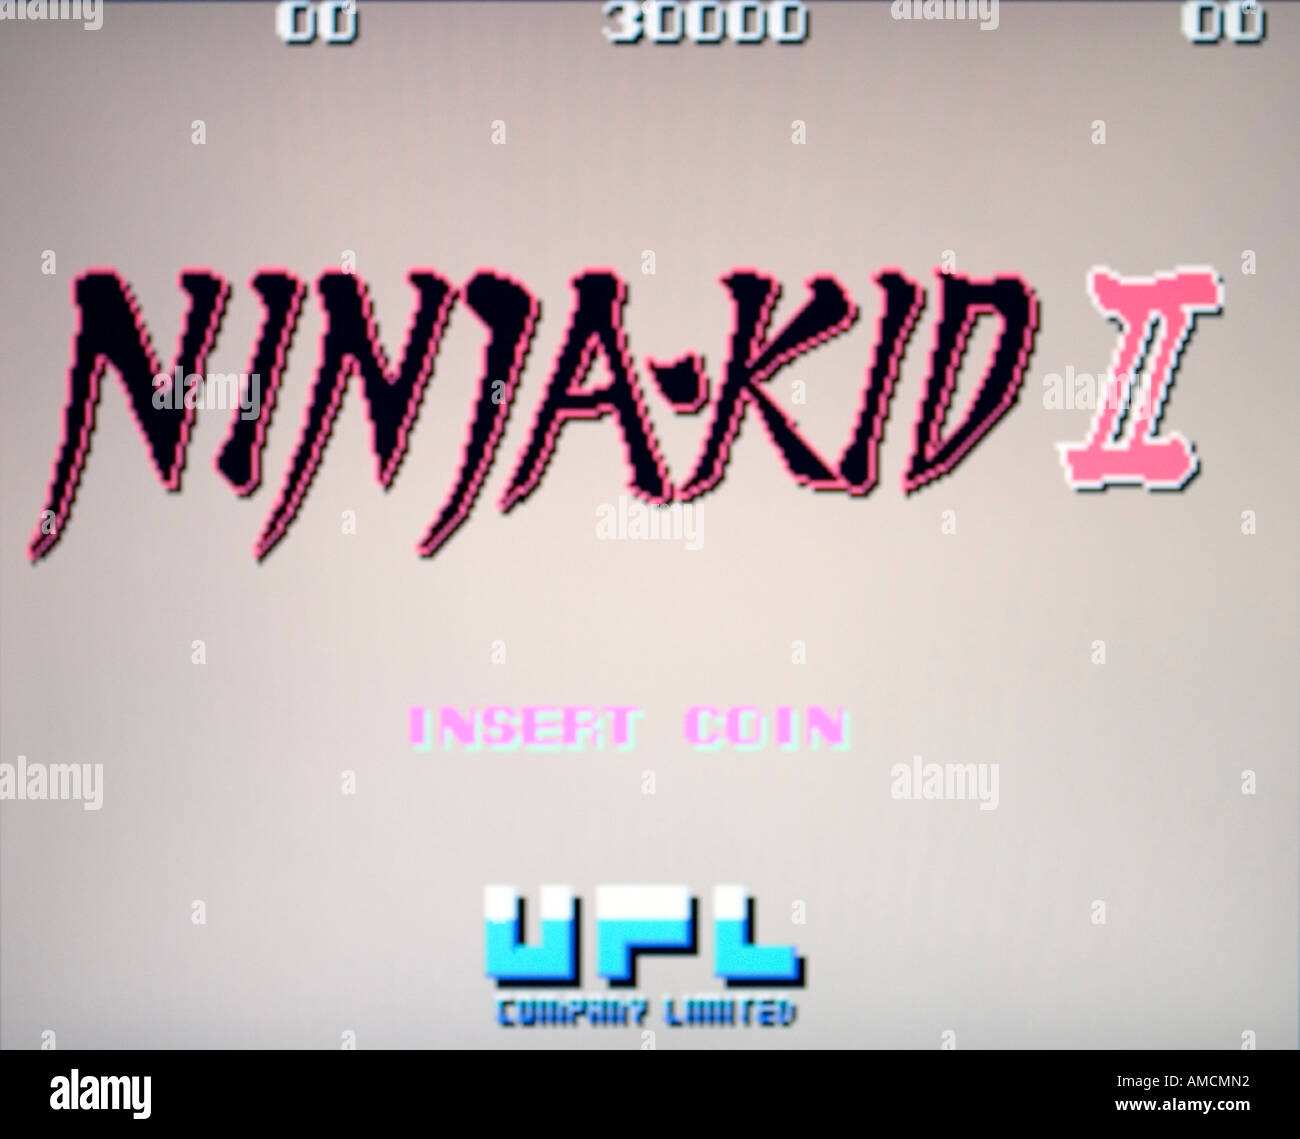 ninja kid video game